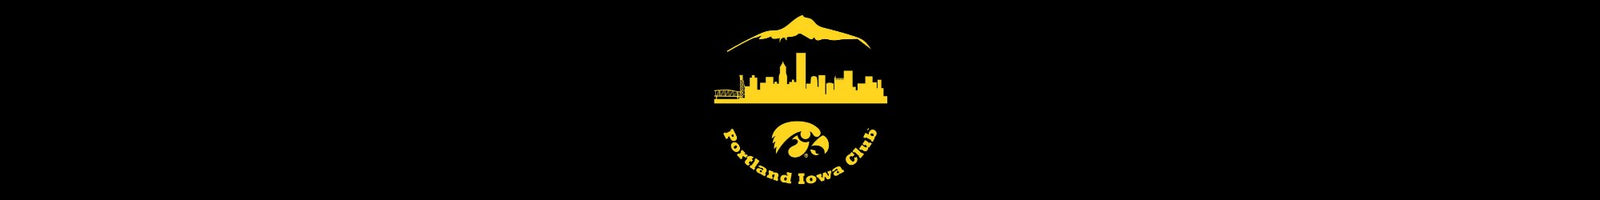 Portland Iowa Club Shop